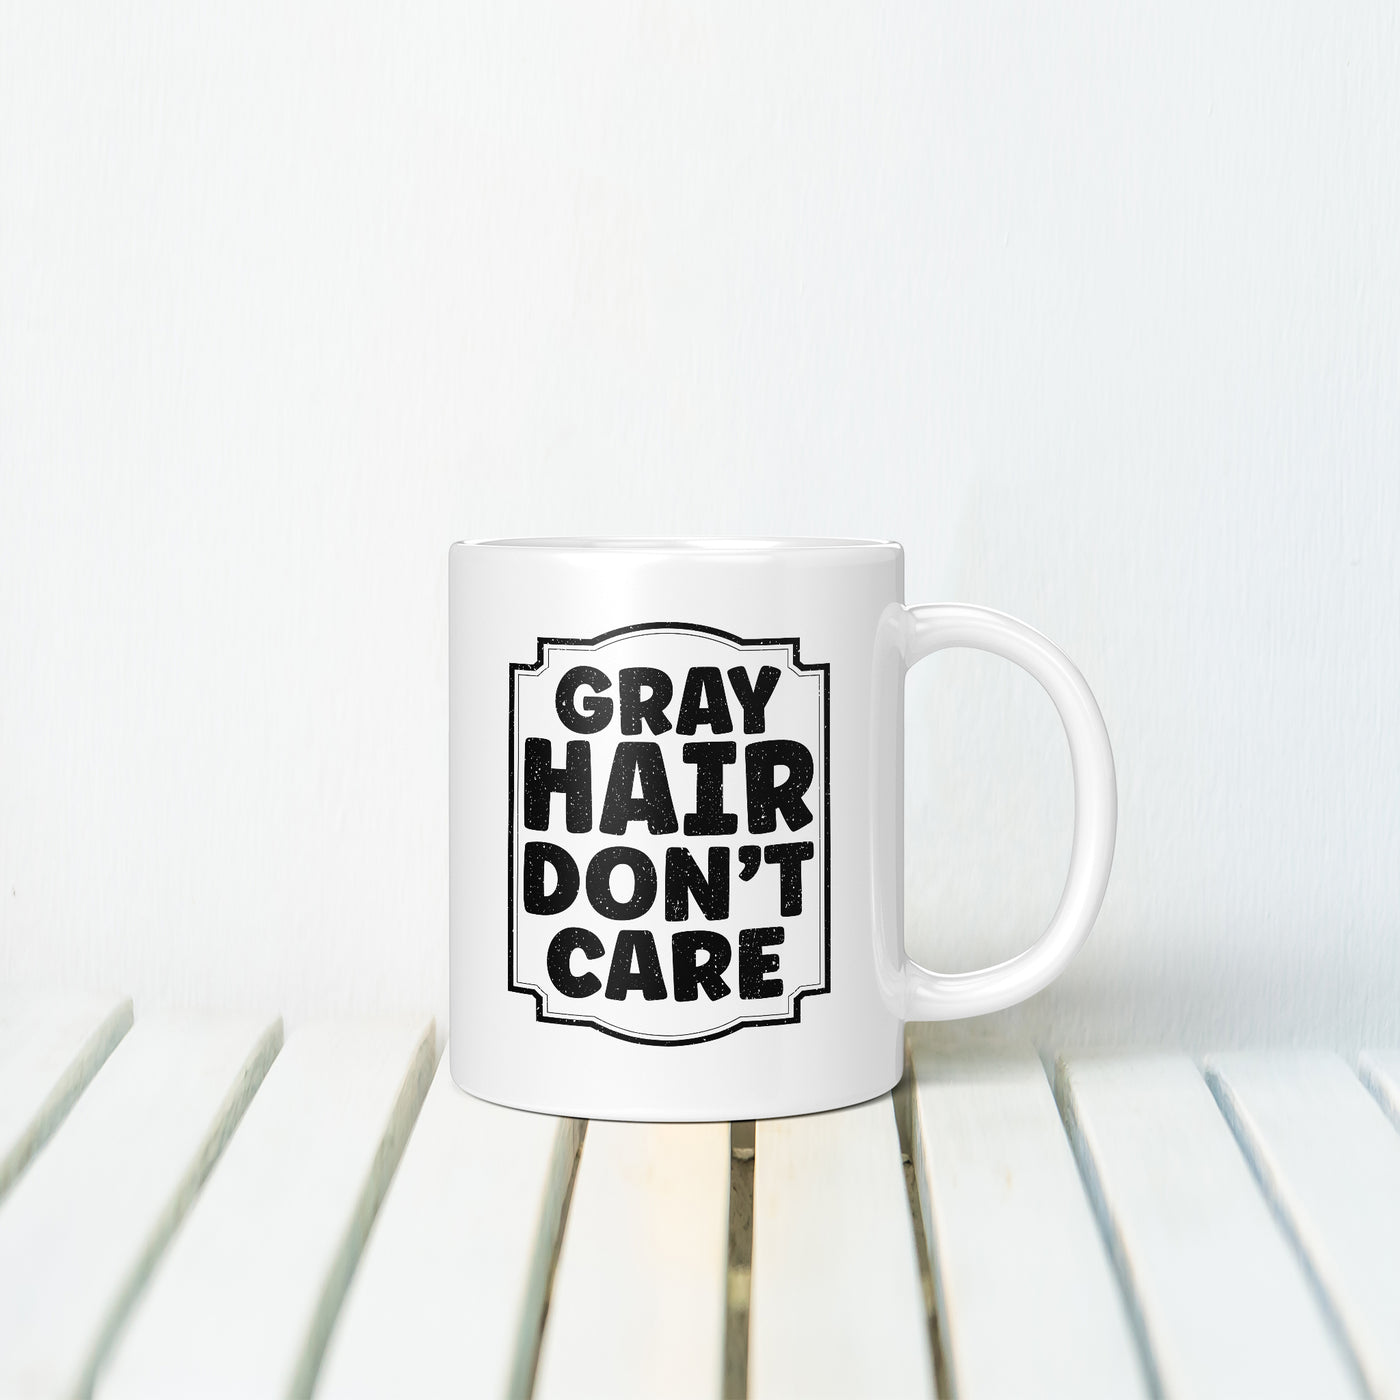 Gray Hair Don't Care Texture Mug